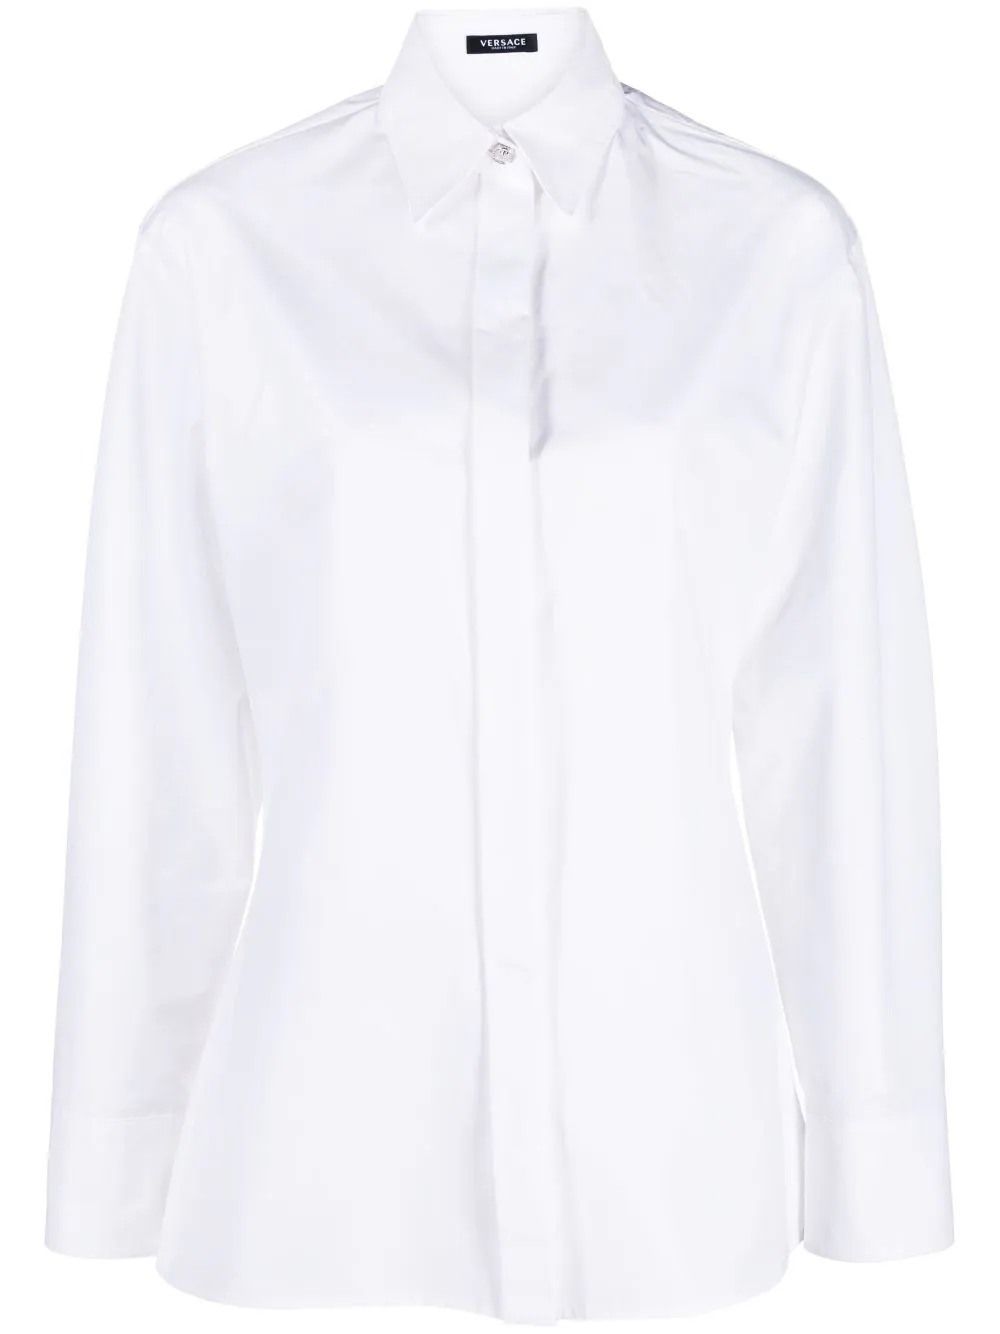 Shirt (White Cotton) | style